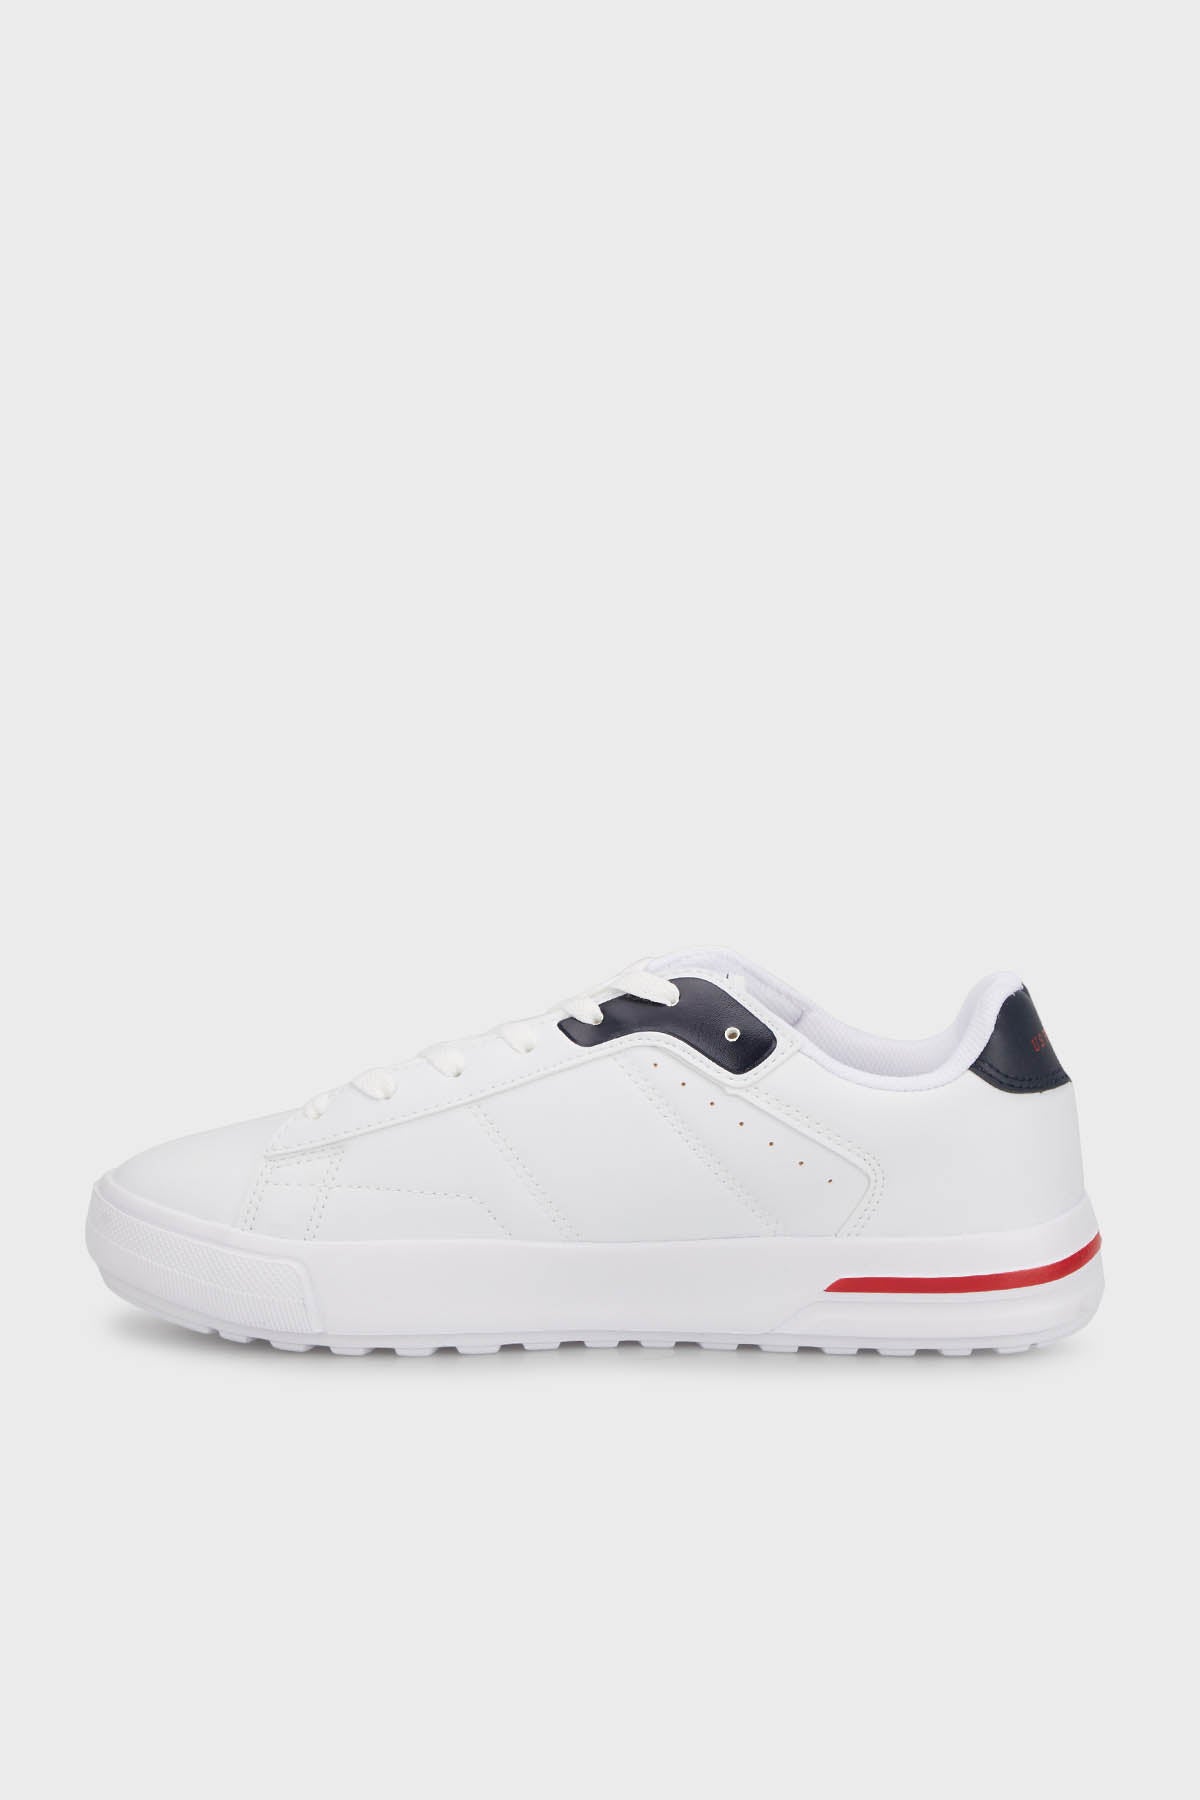 U.S. Polo Sneaker Erkek Ayakkabı MANGO 4FX Beyaz-Lacivert-Kırmızı